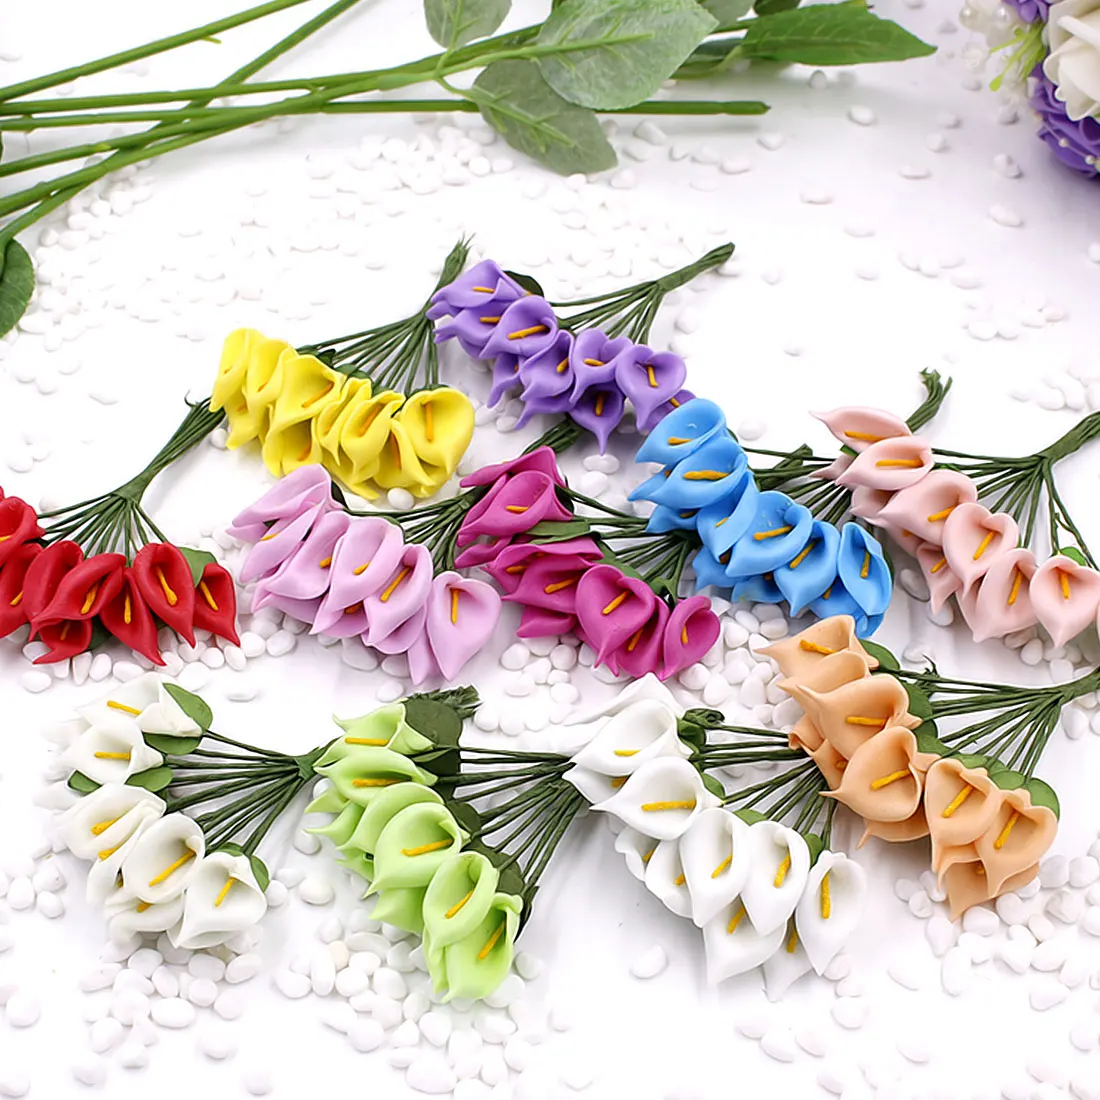 Цветы каллы лилии 144 шт(2,5 см/а) моделирование Искусственные из ПЭ пена Флорес Свадебные украшения DIY коробки коллаж ремесло поставки